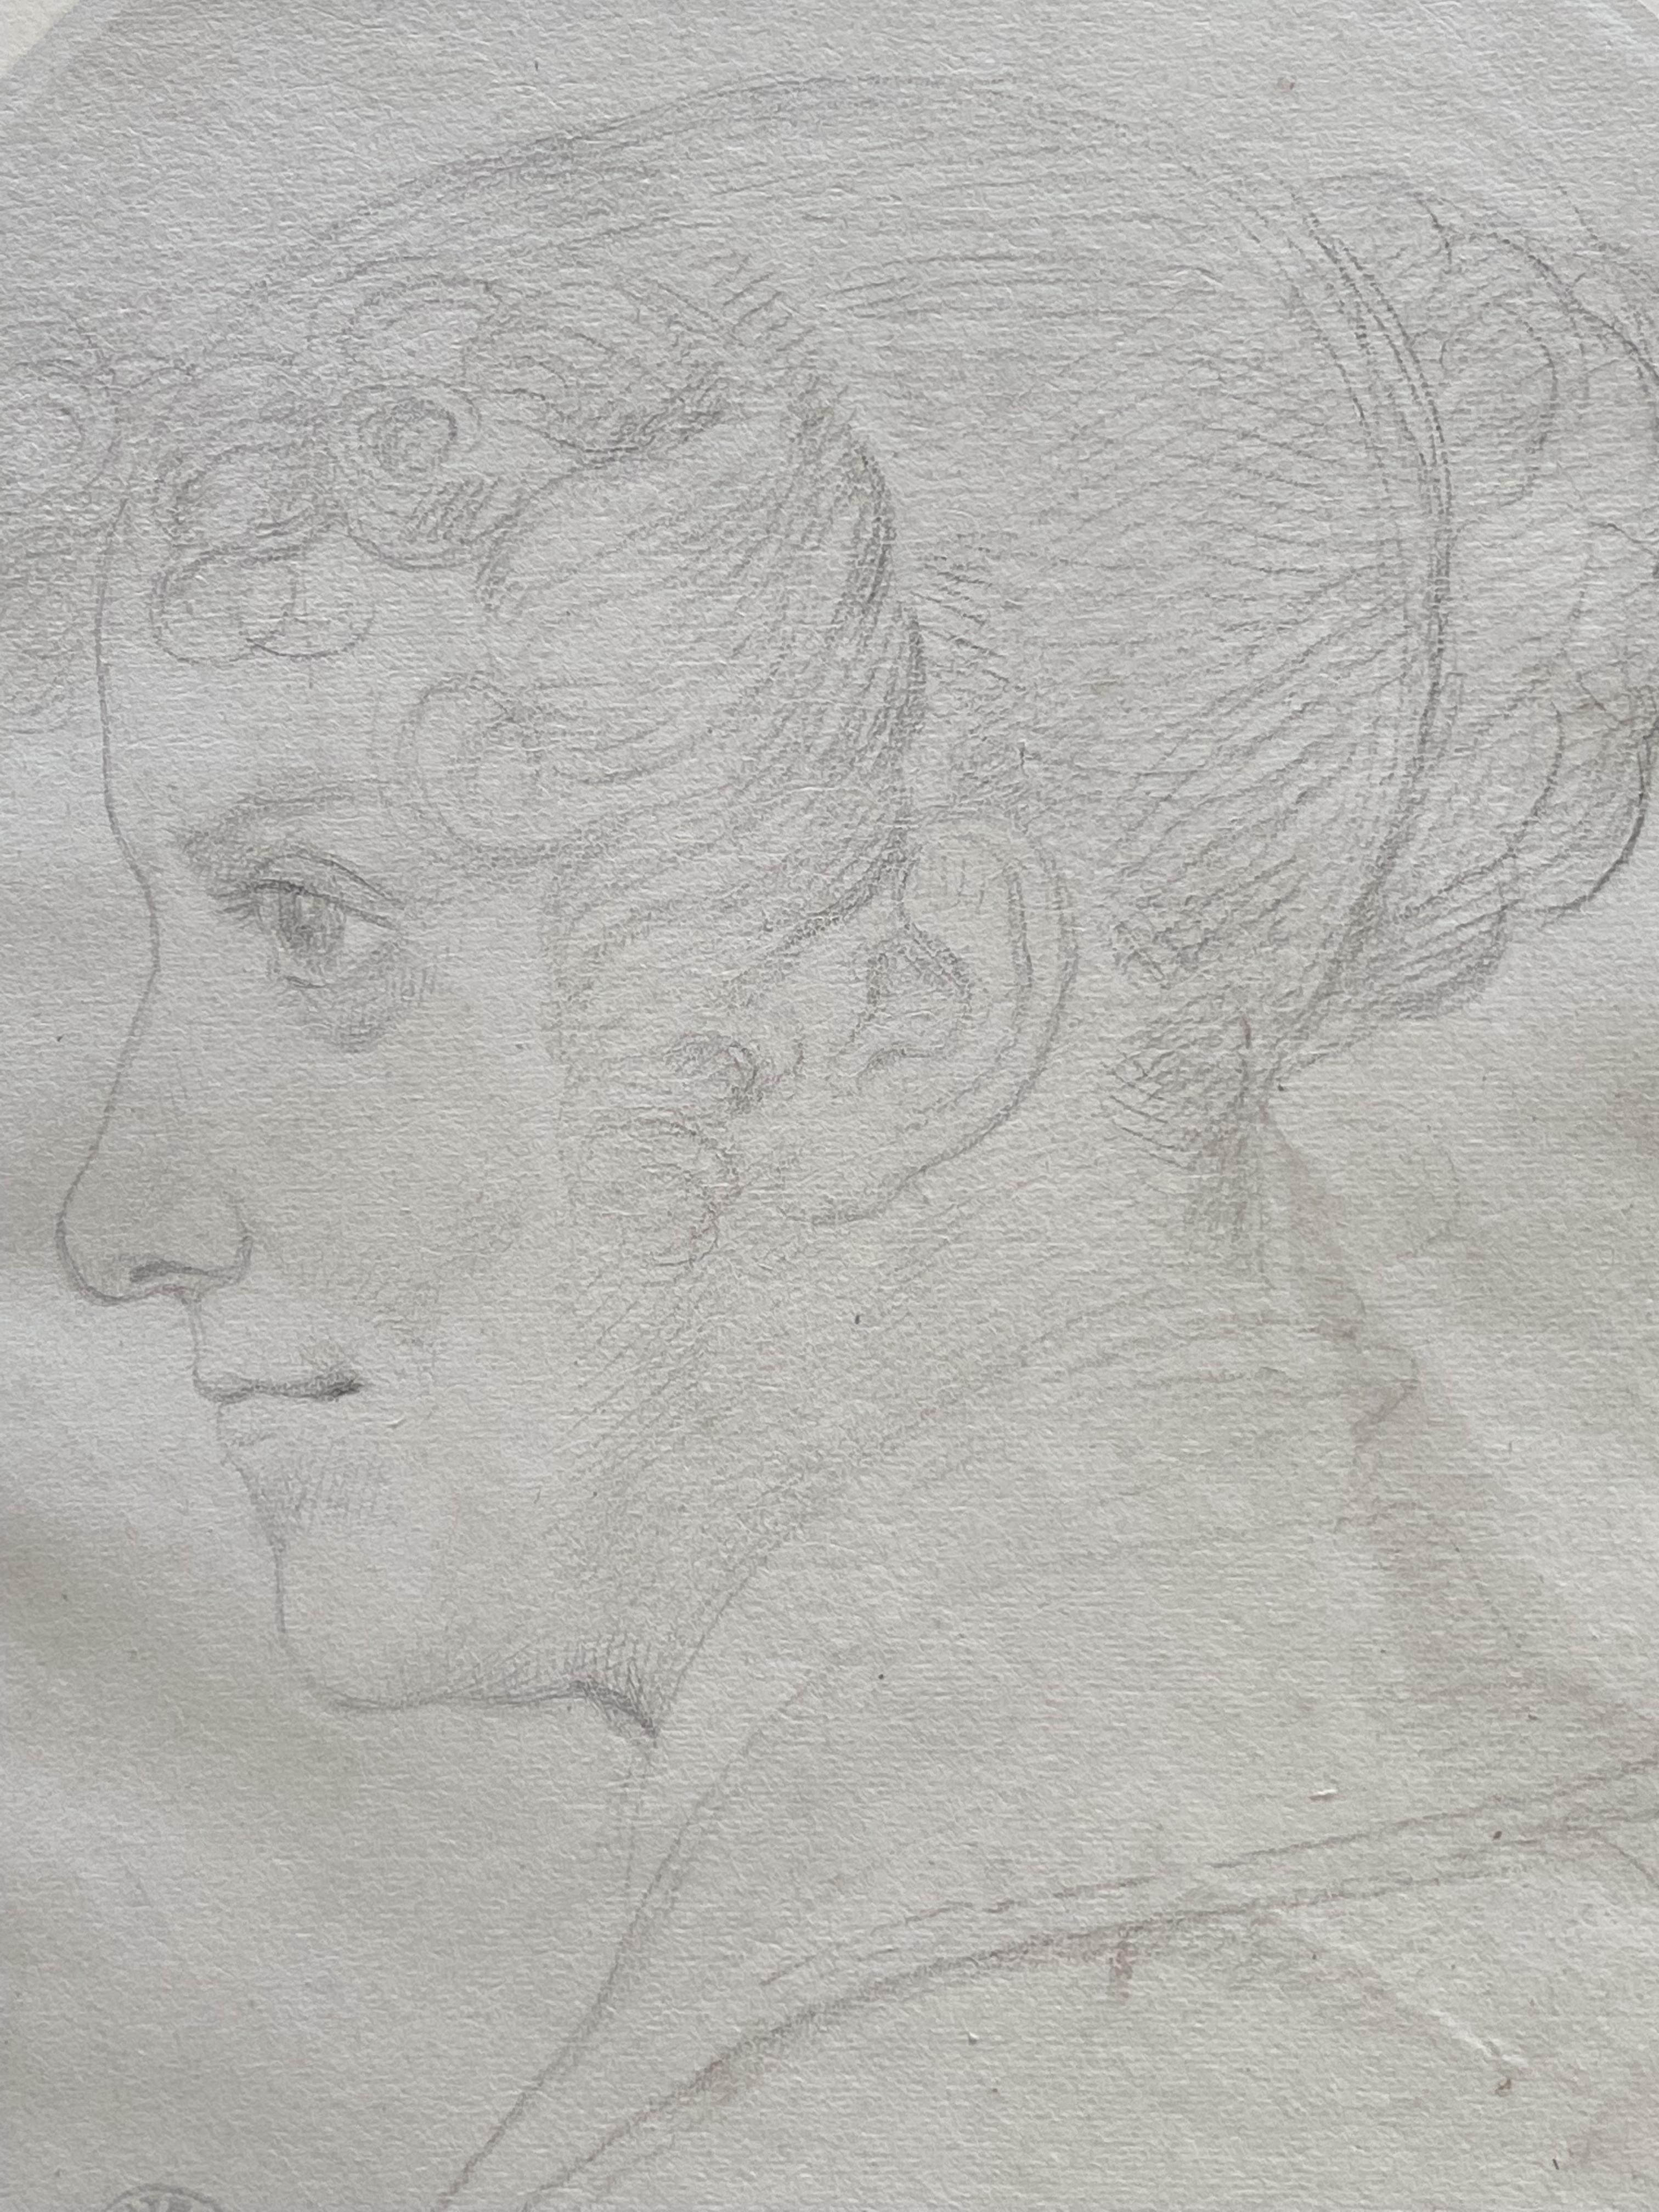 Achille Devria (1800-1857) Eine junge Frau im Profil zu sehen, Originalzeichnung (Romantik), Art, von Achille Devéria